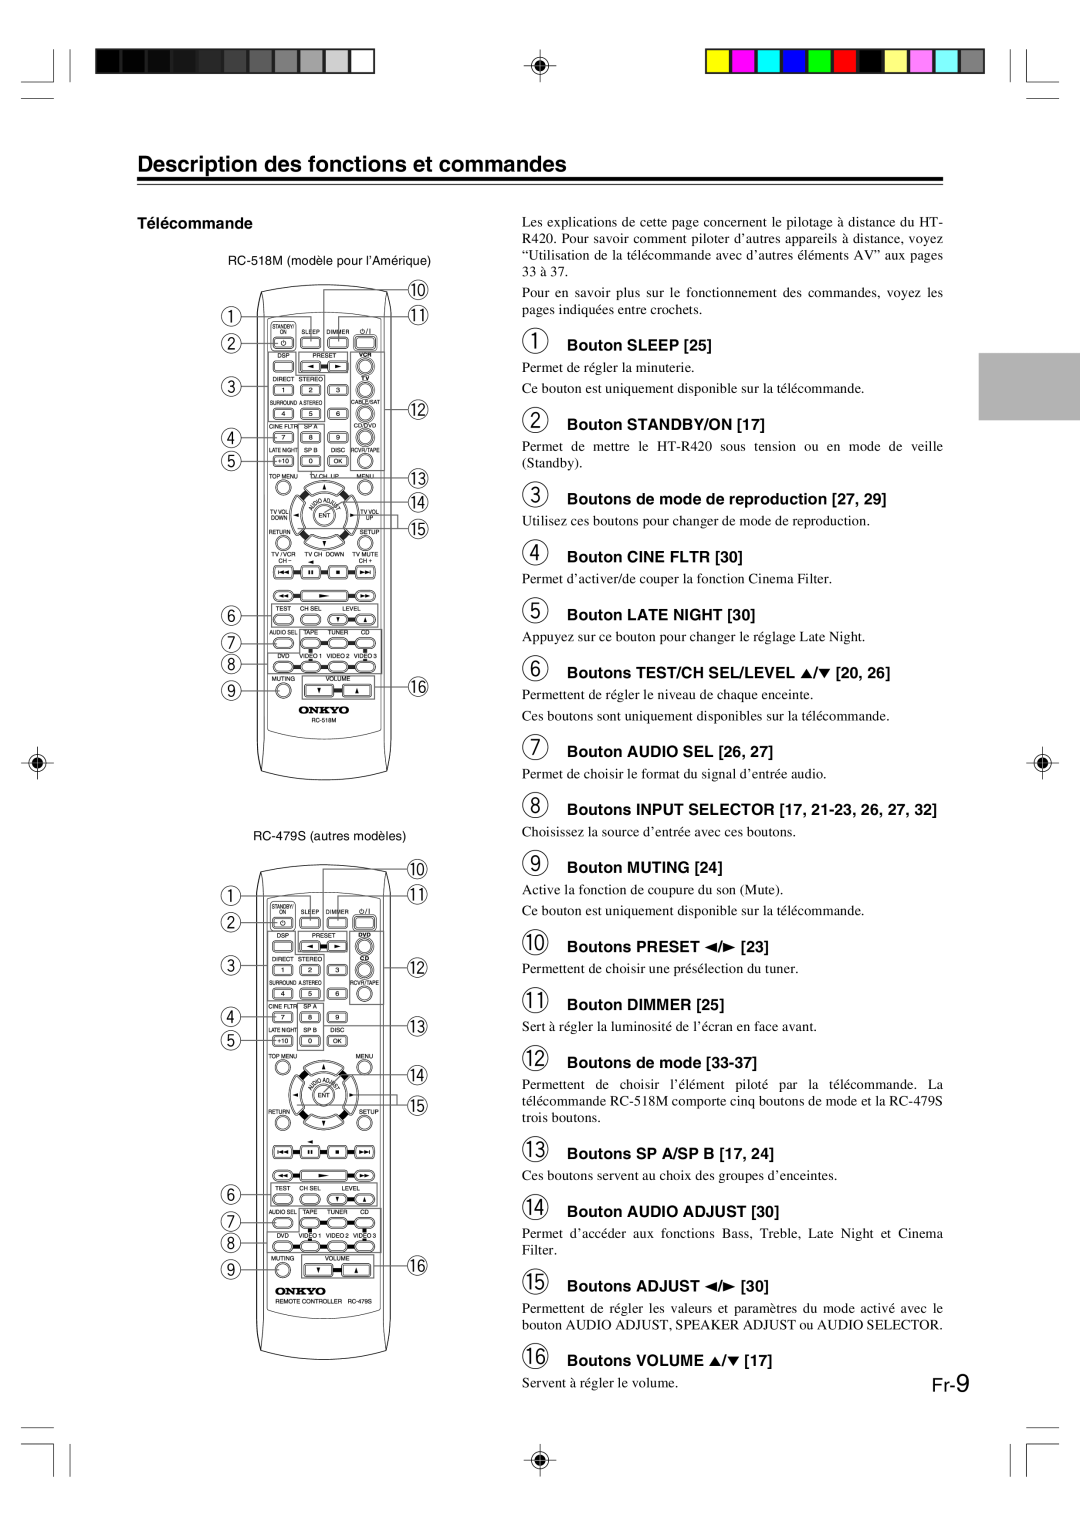 Onkyo HT-R420 manual Description des fonctions et commandes 